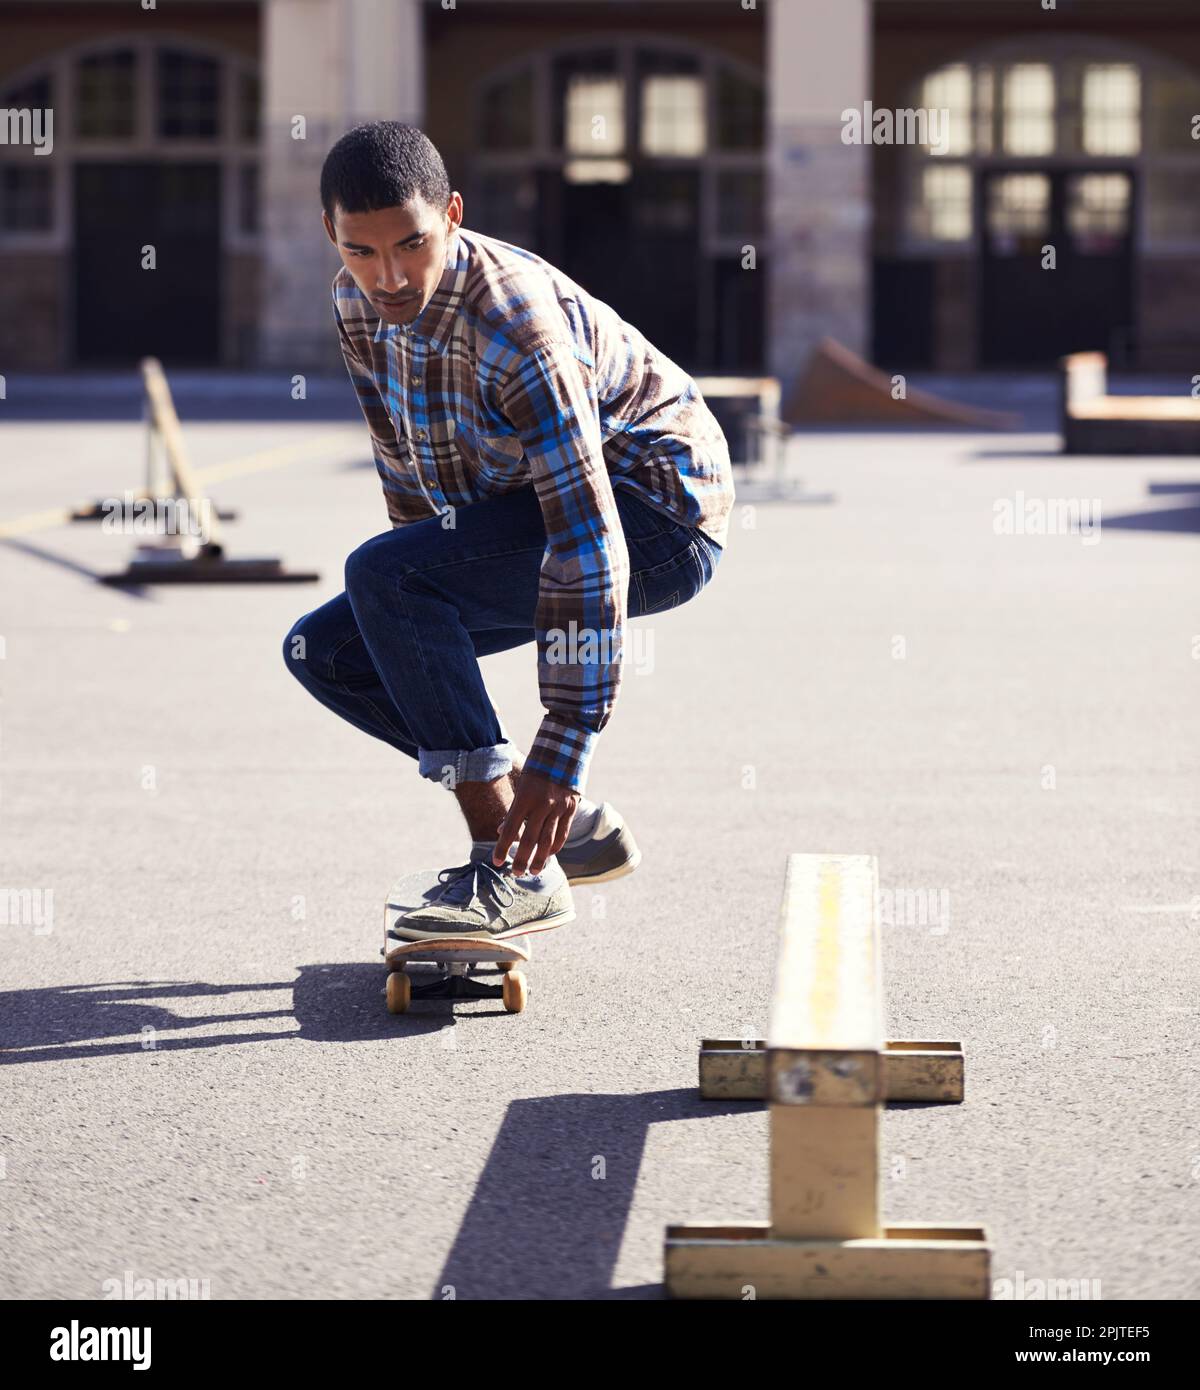 L'enfer vous montre comment il a fait. un jeune homme qui fait du skateboard dans un parc de skate. Banque D'Images